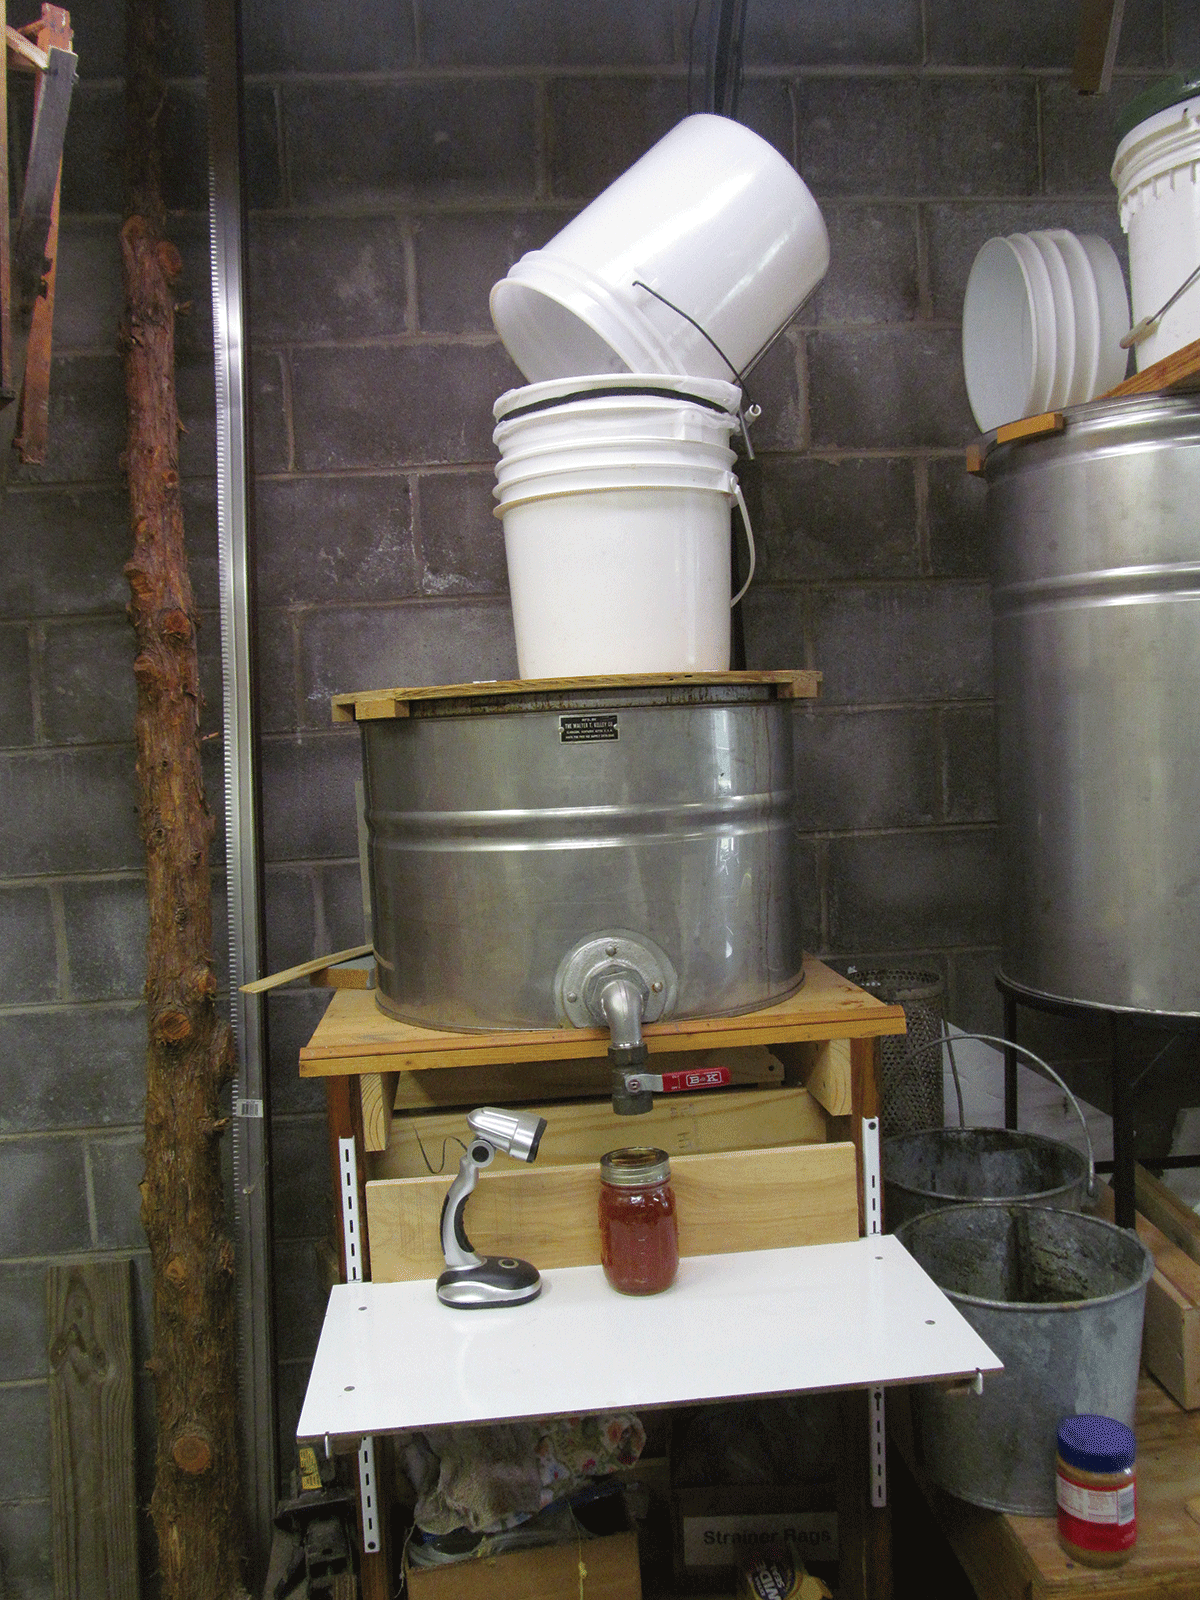 5 Gallon Honey Bottling Bucket